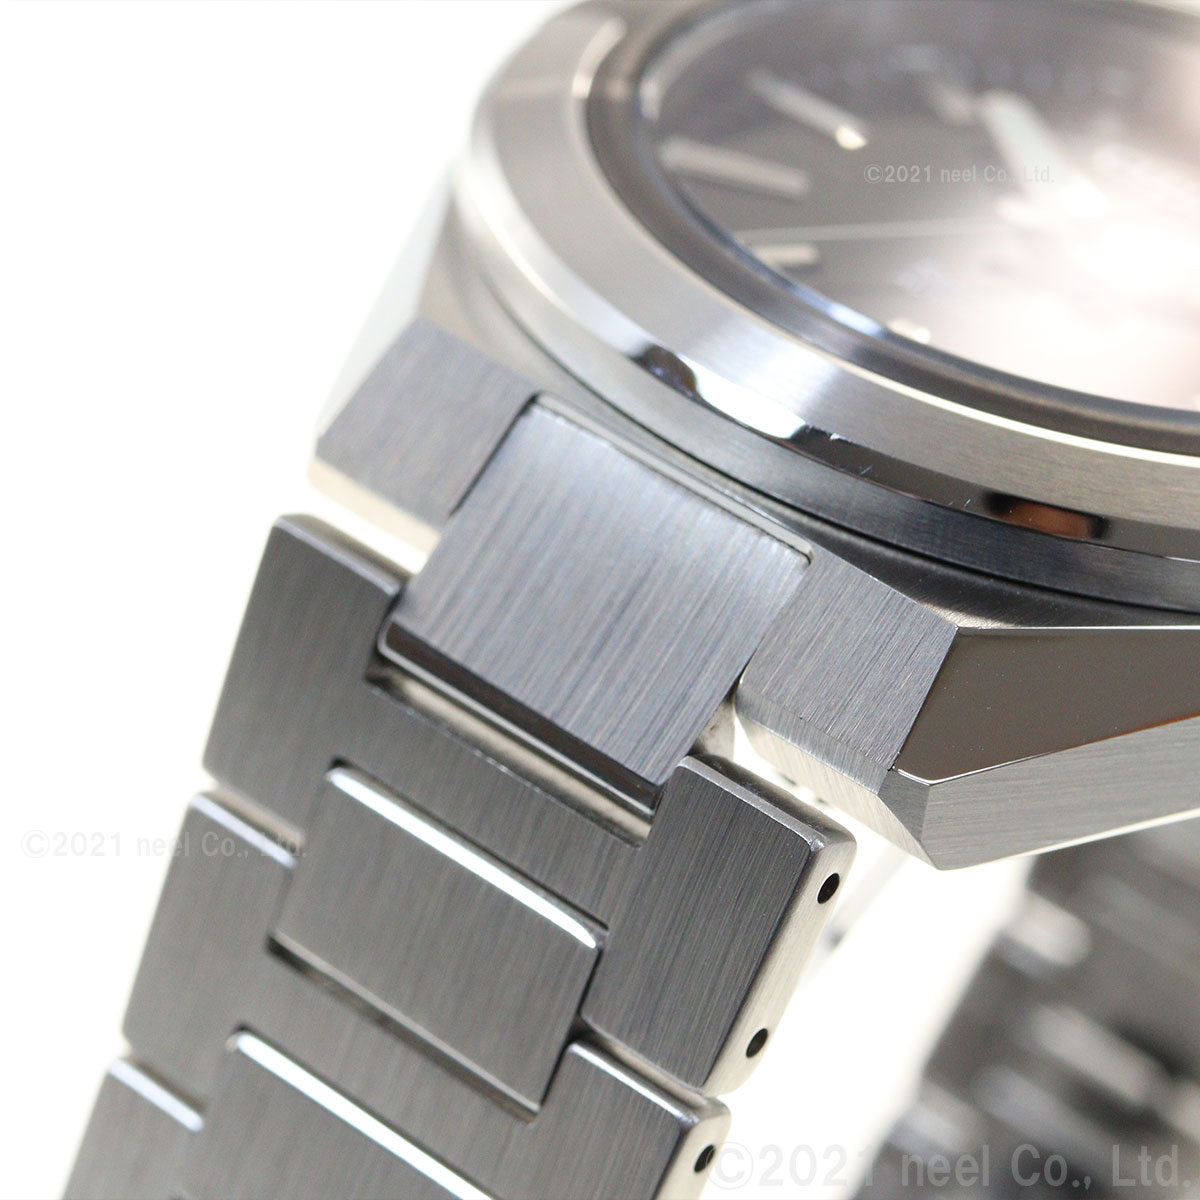 シチズン シリーズエイト CITIZEN Series 8 メカニカル 870 自動巻き 機械式 腕時計 メンズ NA1004-87E